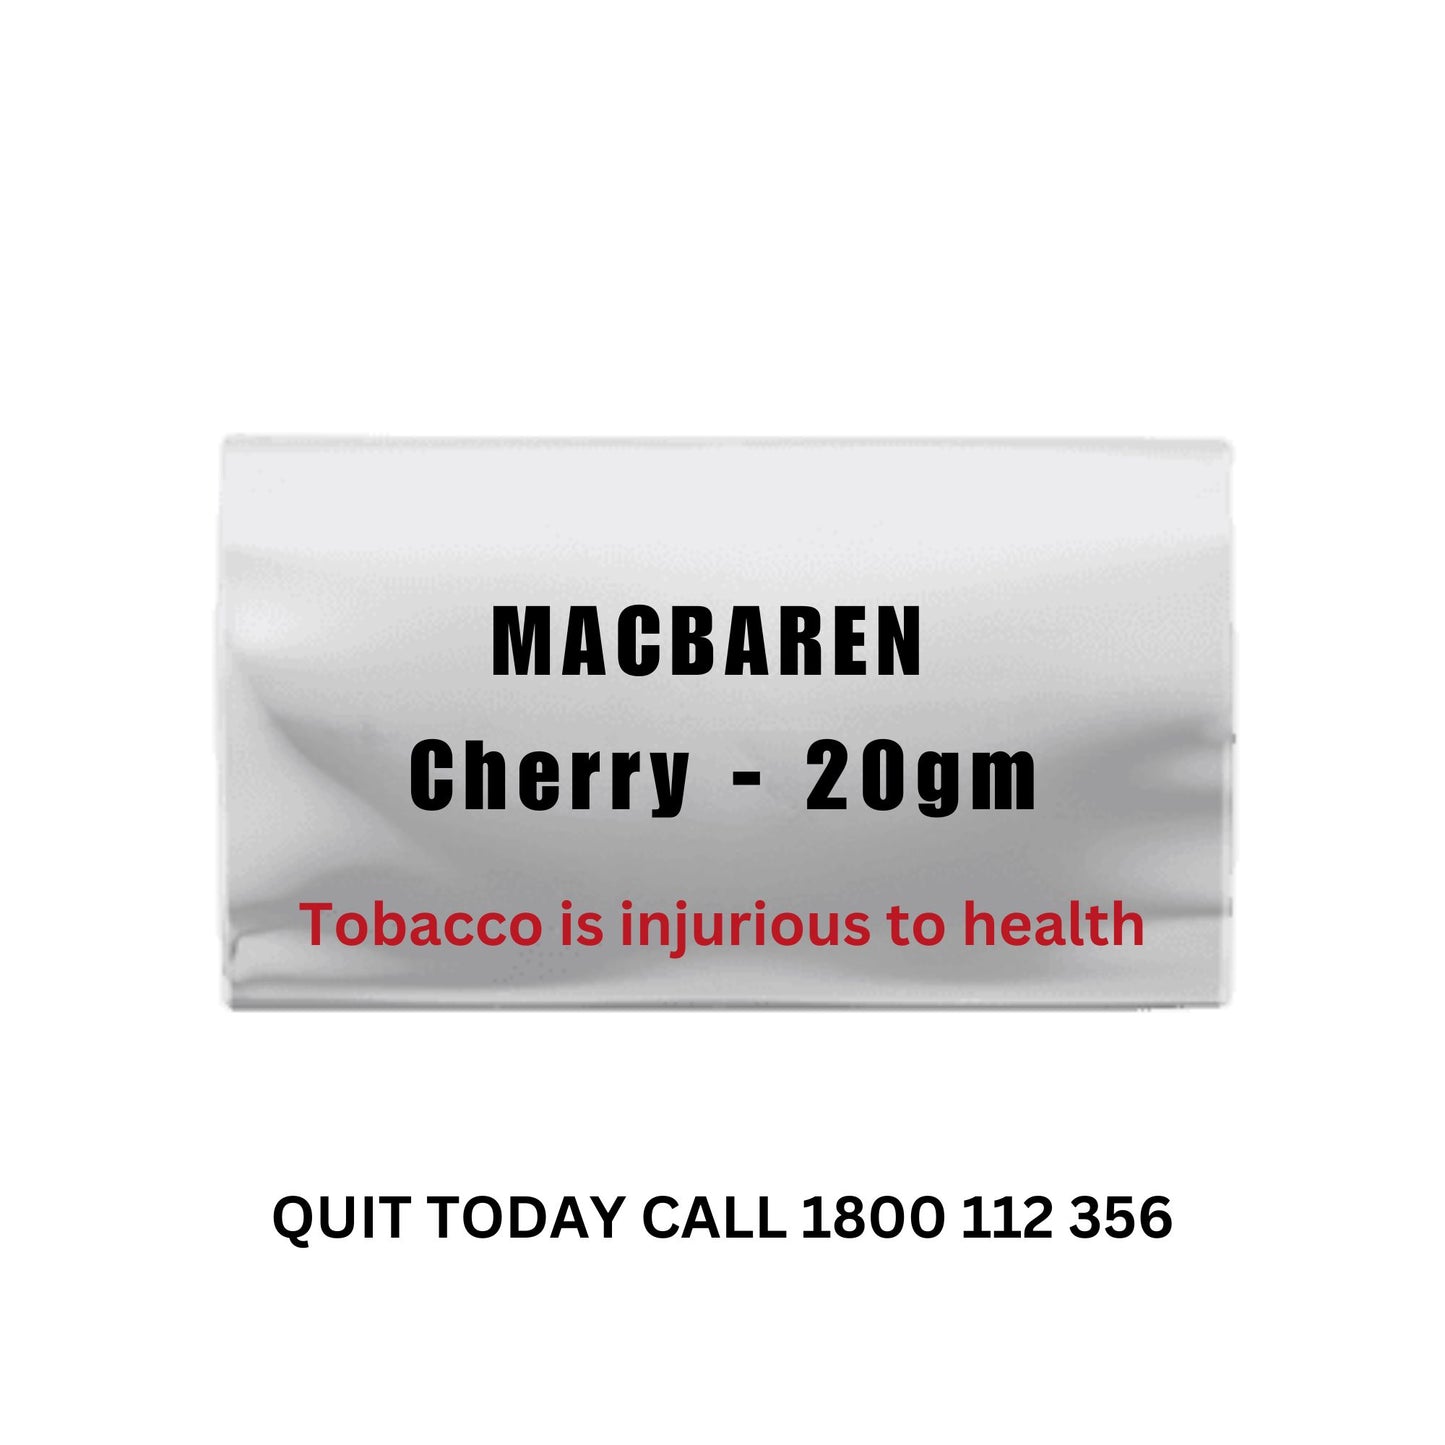 MACBAREN Cherry - 20g